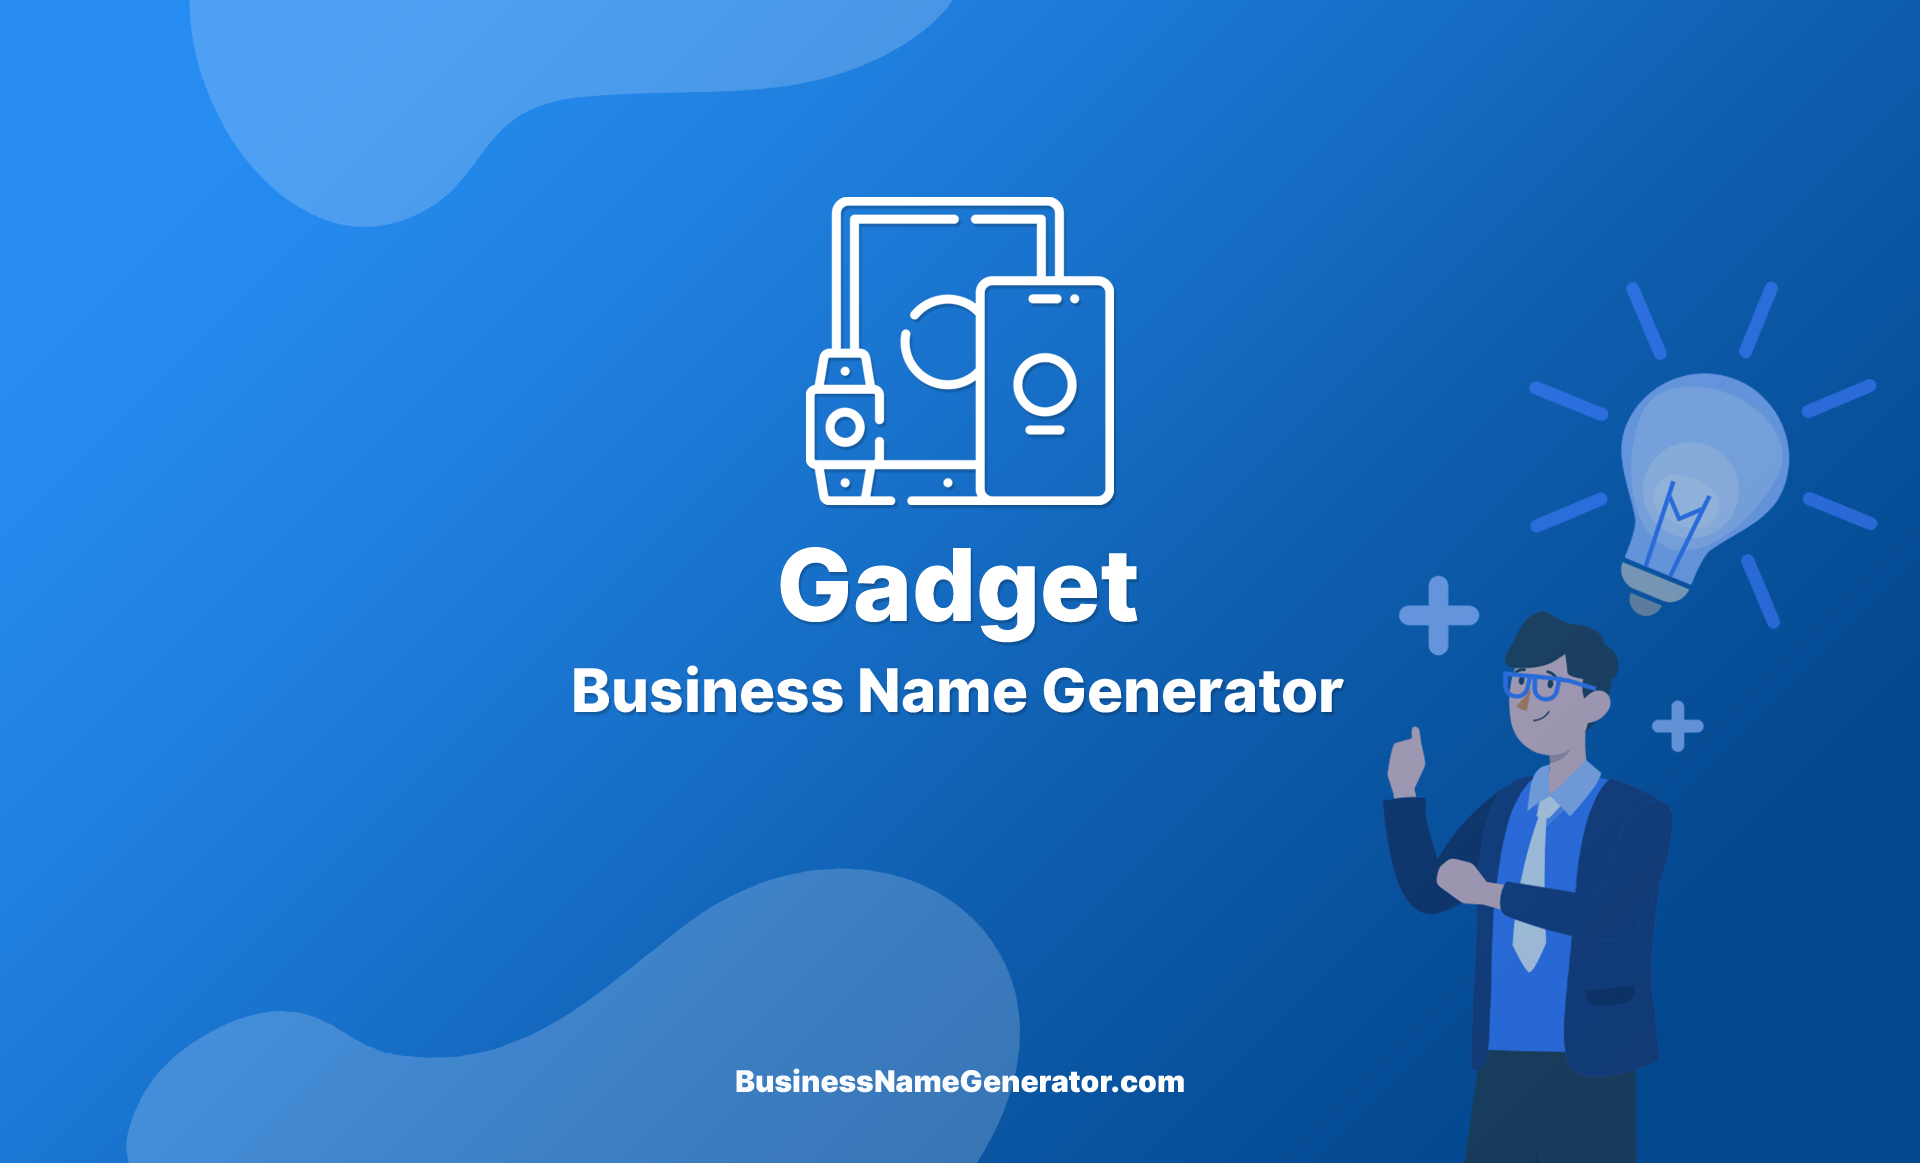 Gadget Business Name Generator